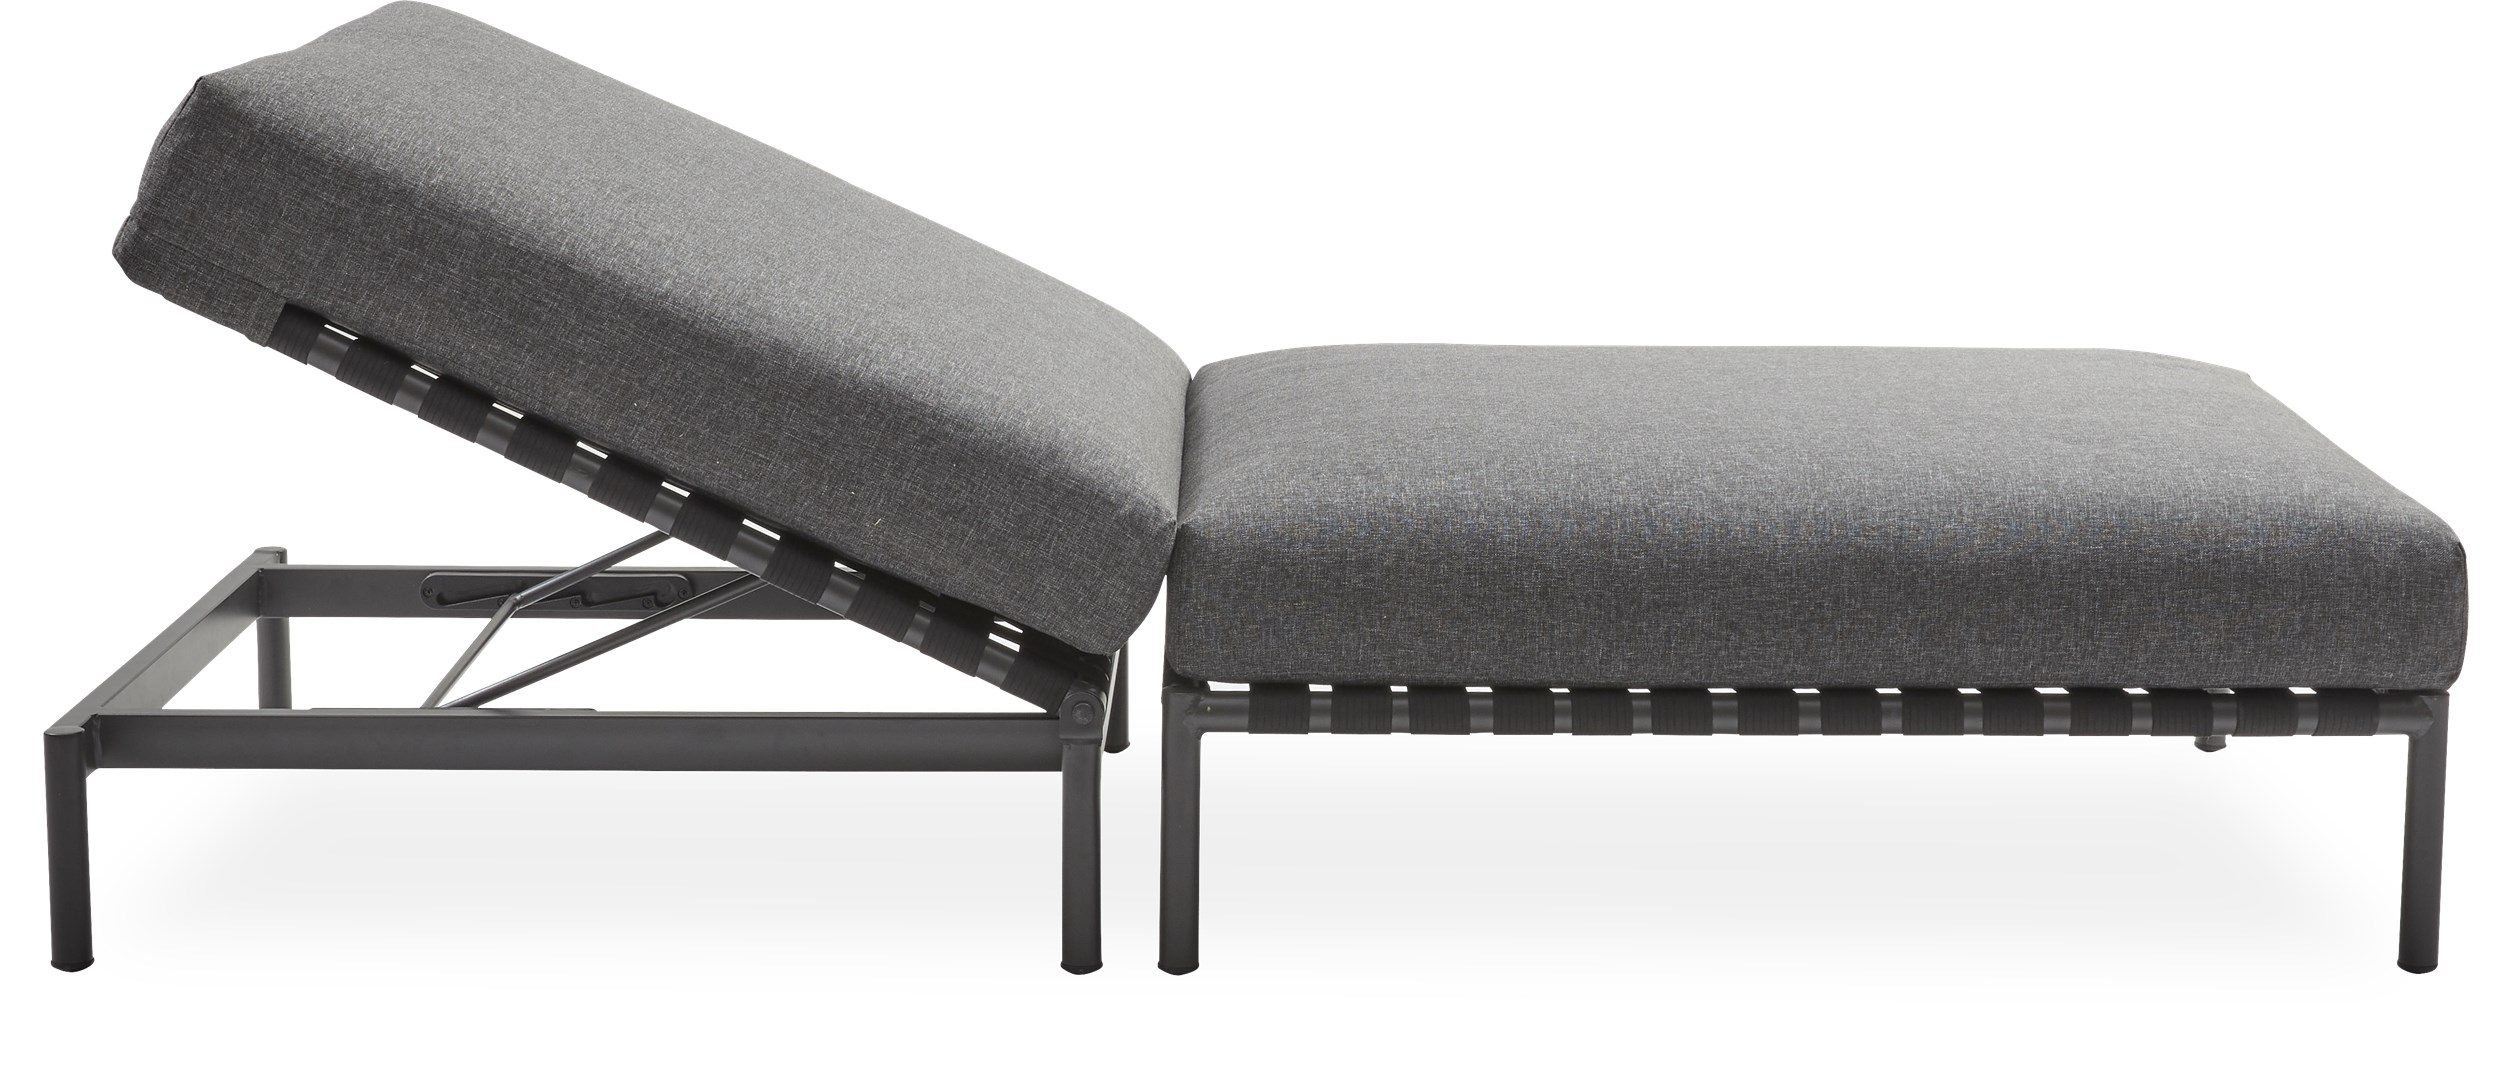 Horizon loungesolstol - Sits med flätade band i polyester, stomme i mörkgrått aluminium och dynor i mörkgrå 190 g olefin